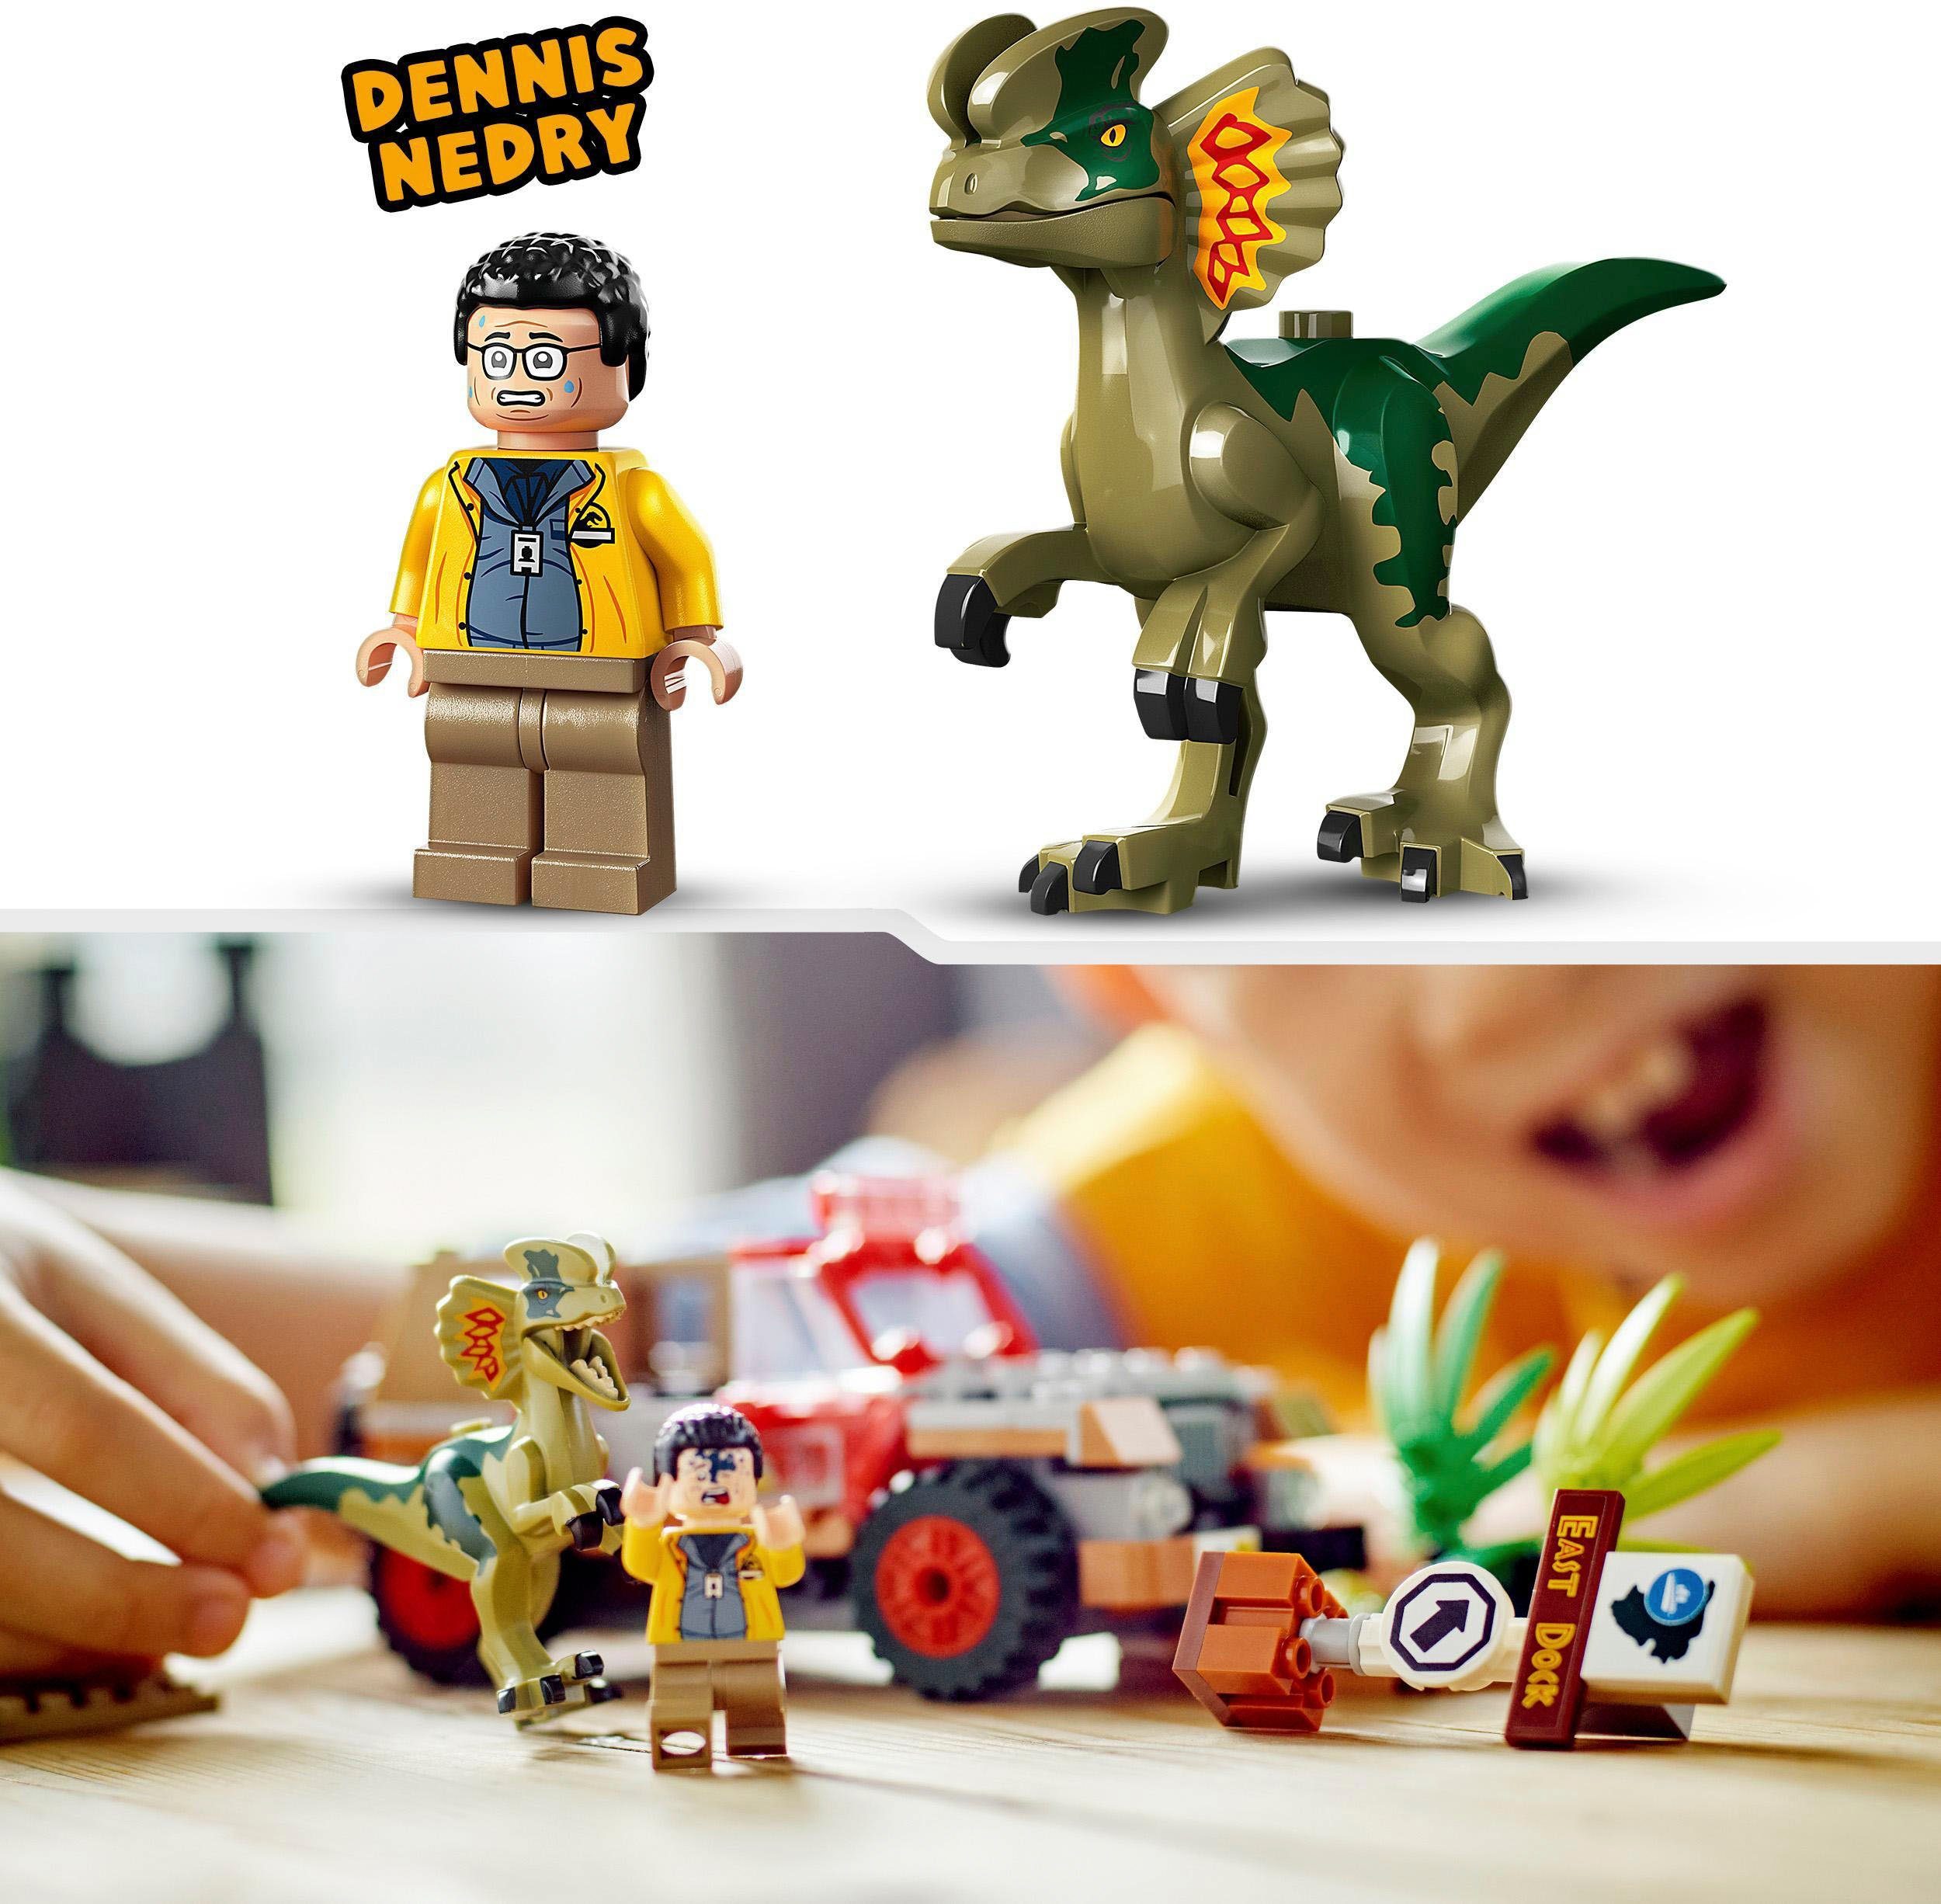 Jurassic Park, LEGO® (211 St), Europe des (76958), Hinterhalt LEGO® Konstruktionsspielsteine Made Dilophosaurus in